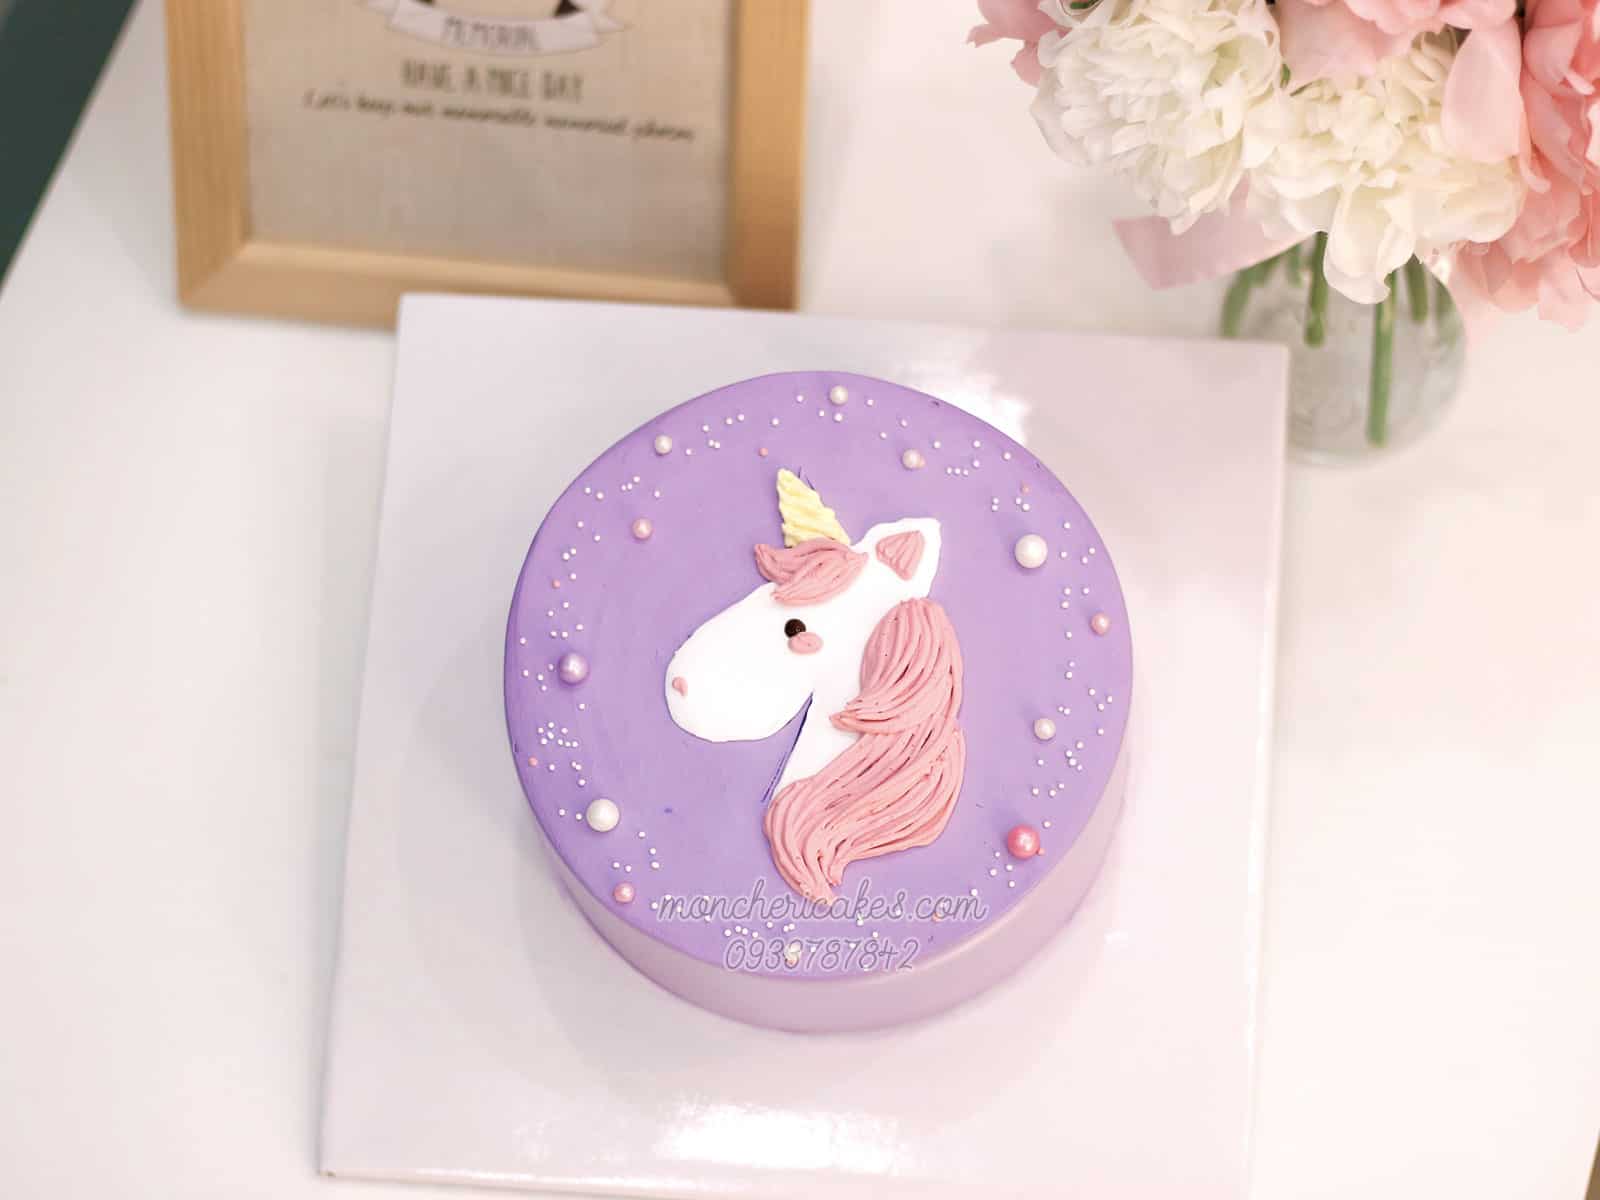 Bánh kem unicorn là một món tráng miệng tuyệt vời và đầy phép màu. Với những gam màu pastel và hình ảnh kỳ lân, bánh kem unicorn sẽ khiến bạn cảm thấy thật tuyệt vời và vui vẻ. Hãy xem hình ảnh liên quan để tìm hiểu thêm về cách làm bánh kem unicorn độc đáo này.